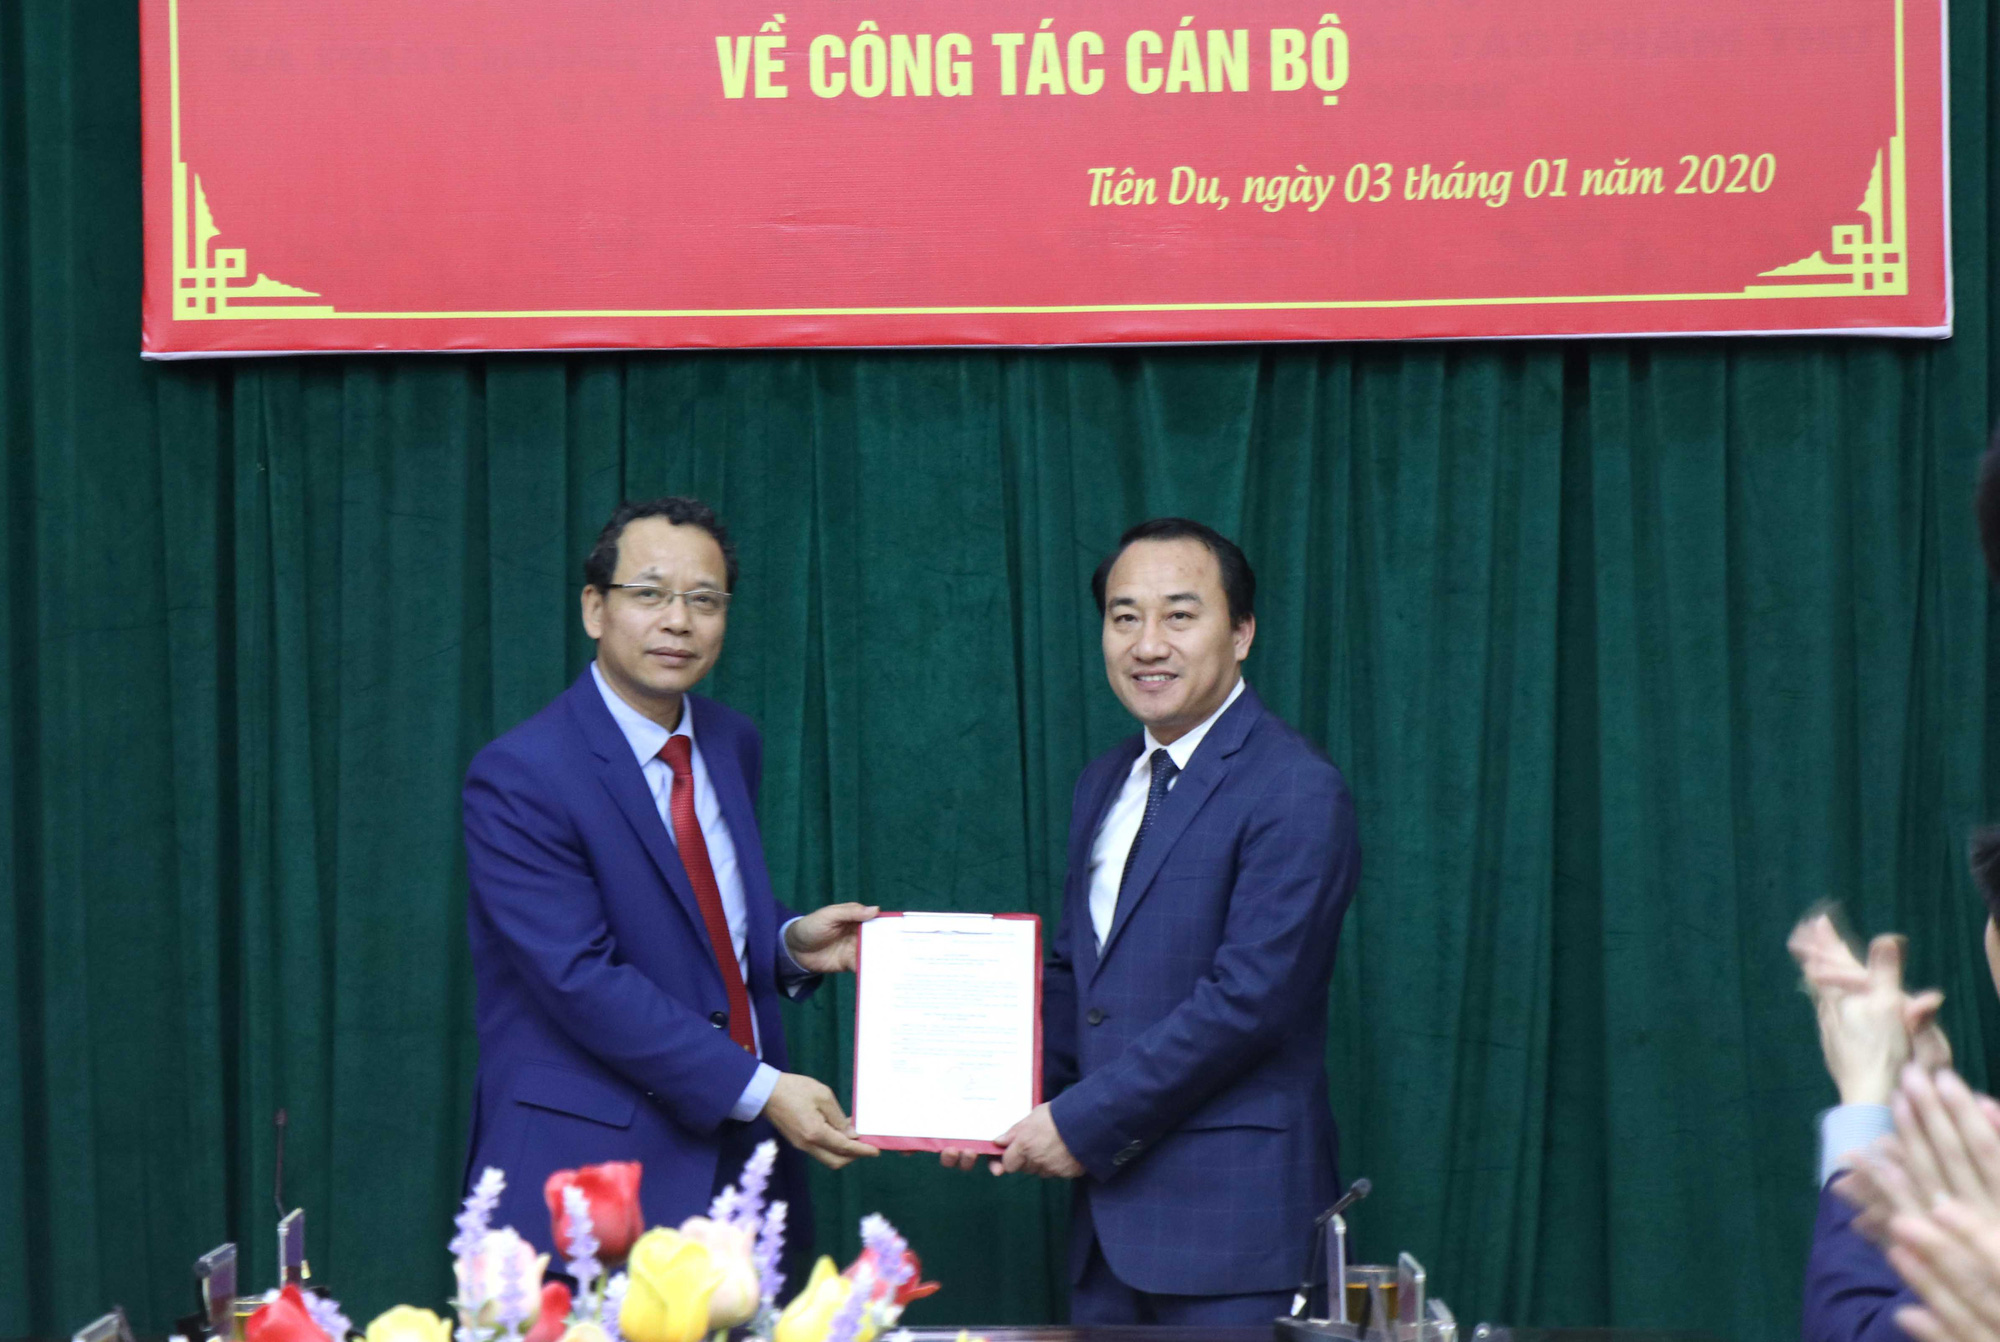 Huyện Tiên Du (Bắc Ninh) có Bí thư Huyện ủy mới Nguyễn Xuân Thanh - Ảnh 1.